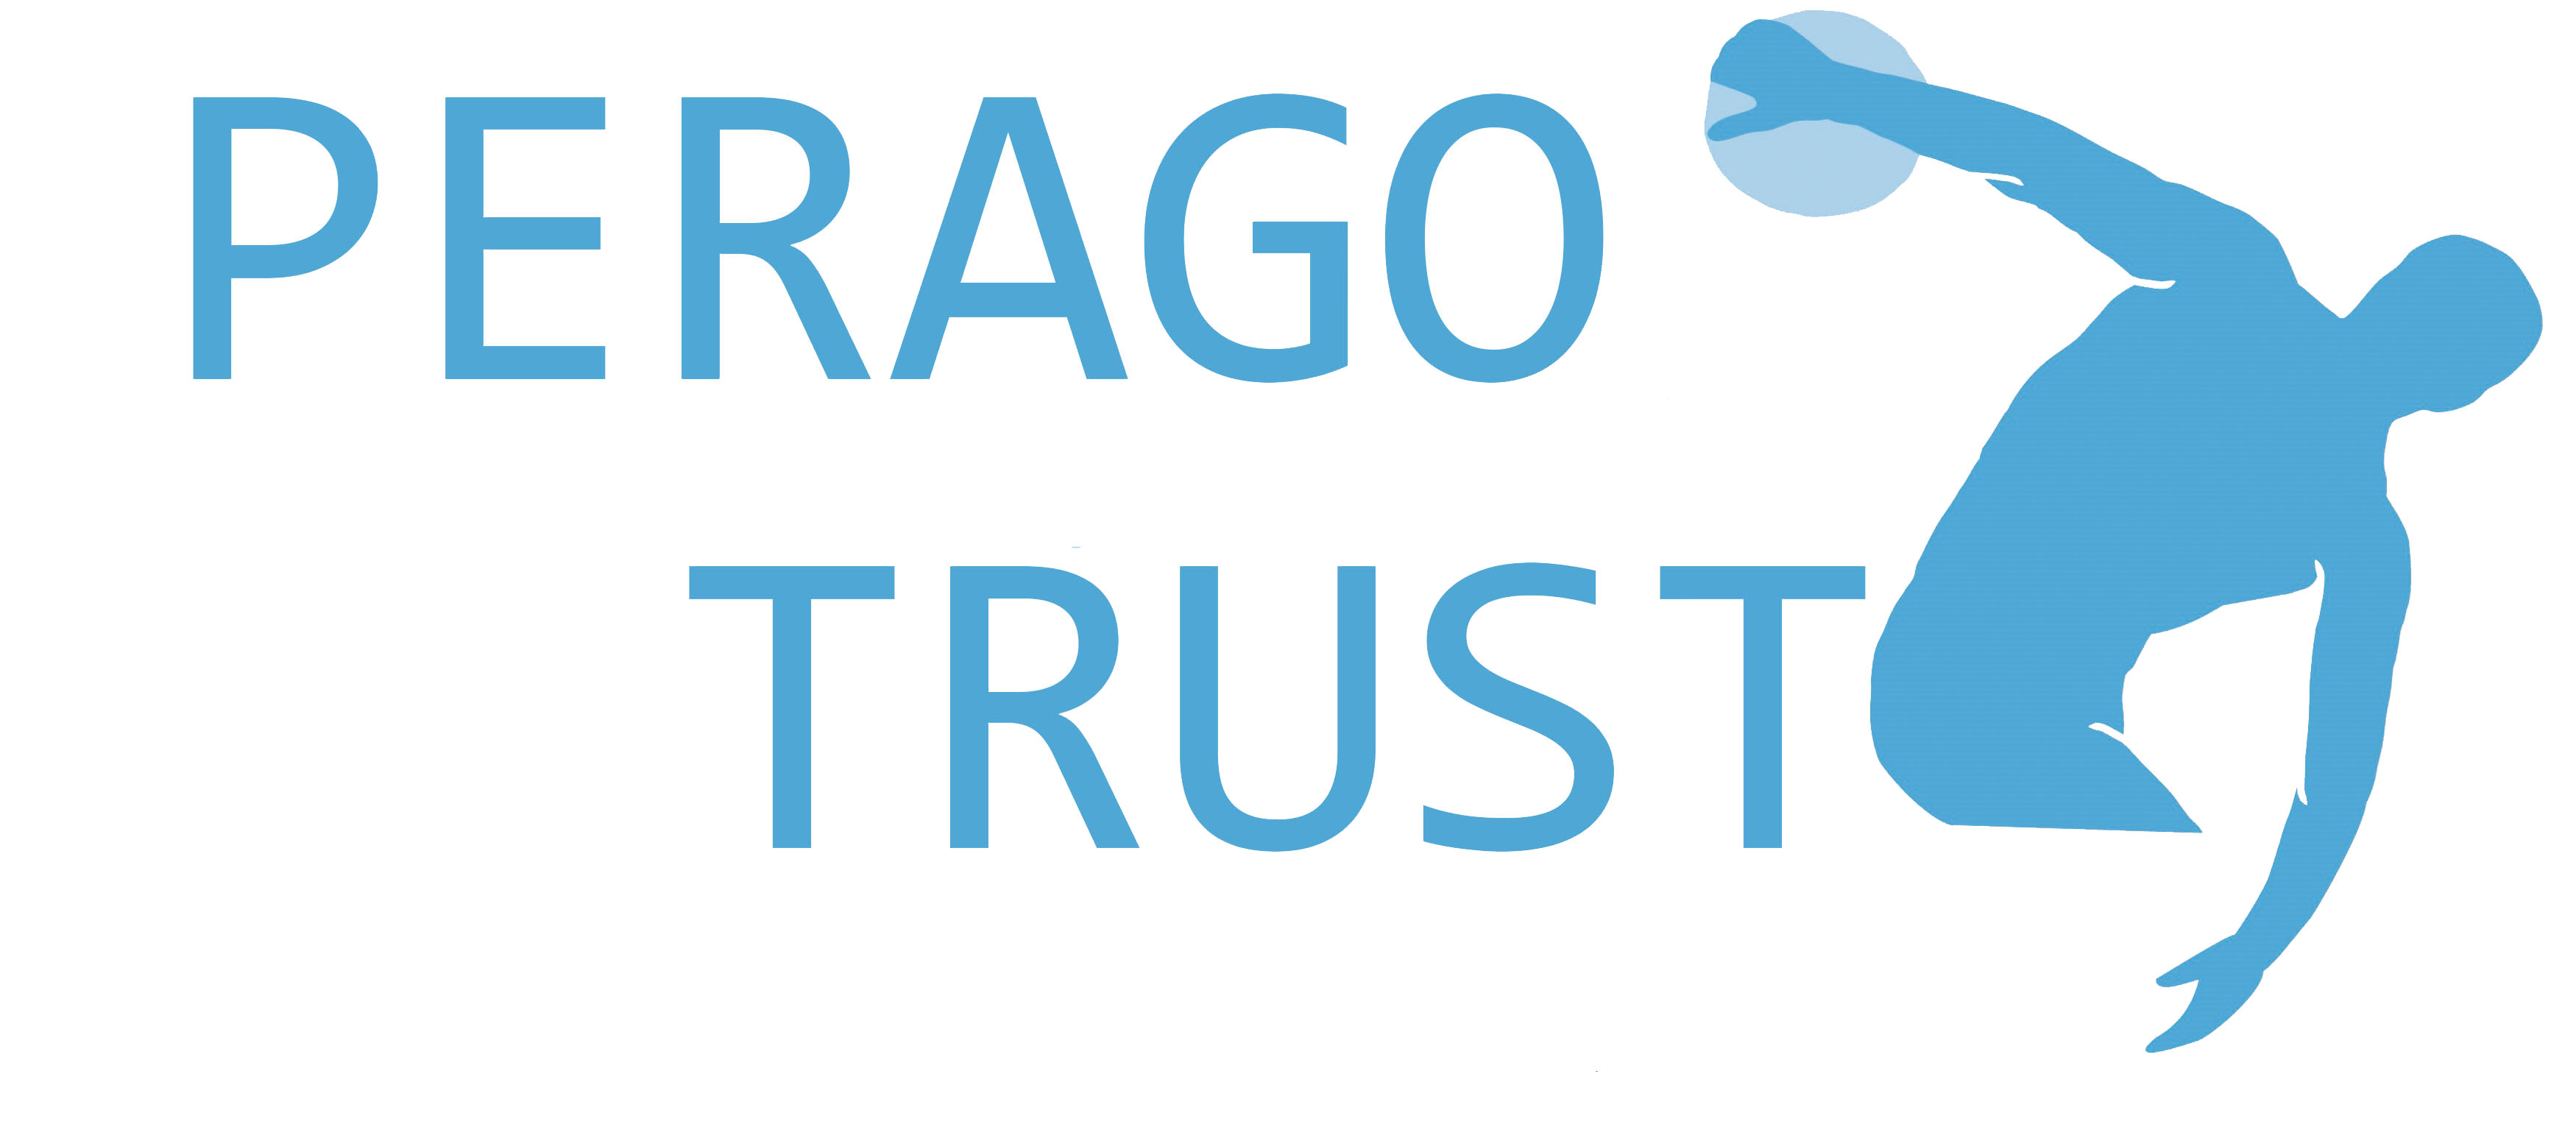 Perago Trust logo